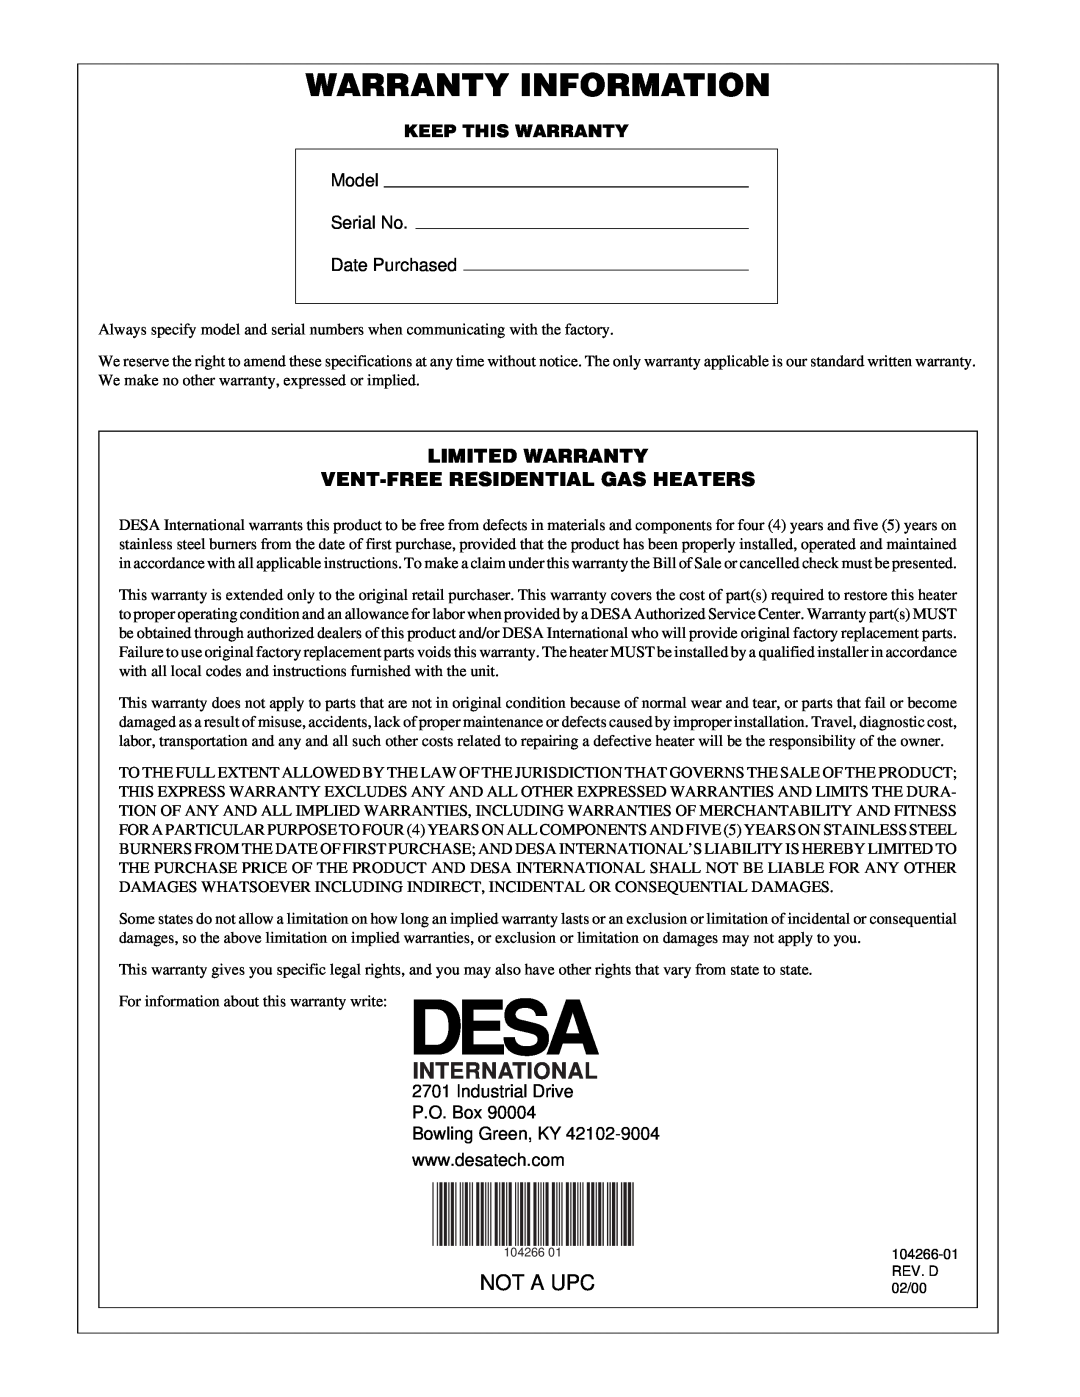 Desa VP1000BTA installation manual Warranty Information, International, Not A Upc, Model Serial No Date Purchased 